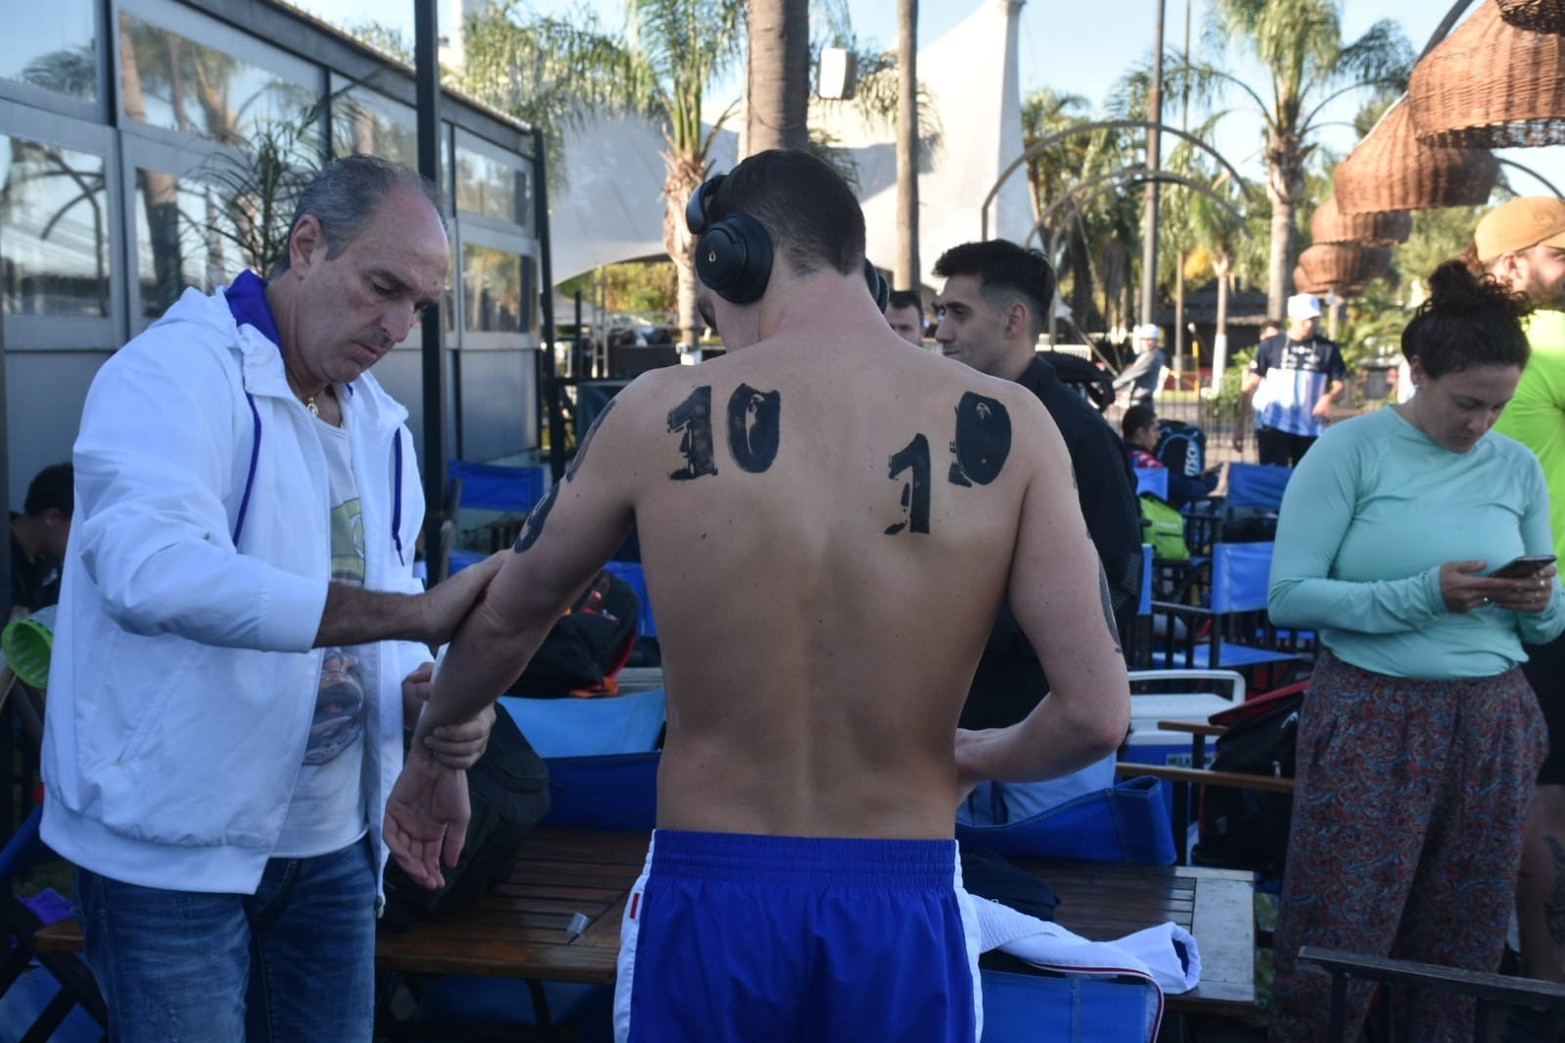 El maratón acuático Santa Fe Coronda vive una nueva edición. Flavio Raina